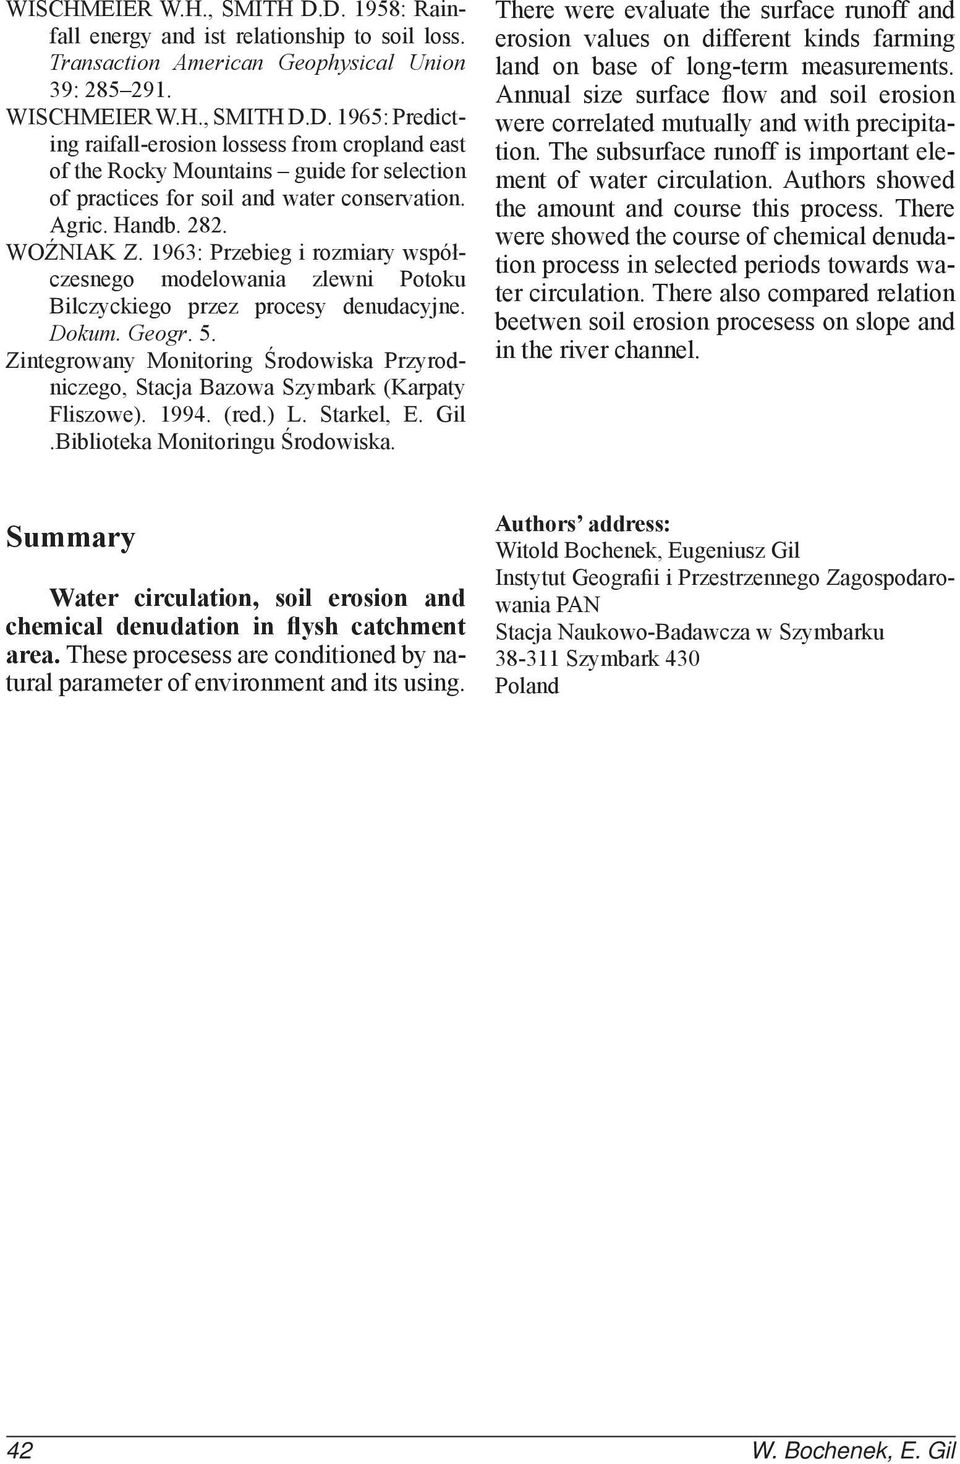 Zintegrowany Monitoring Środowiska Przyrodniczego, Stacja Bazowa Szymbark (Karpaty Fliszowe). 1994. (red.) L. Starkel, E. Gil.Biblioteka Monitoringu Środowiska.